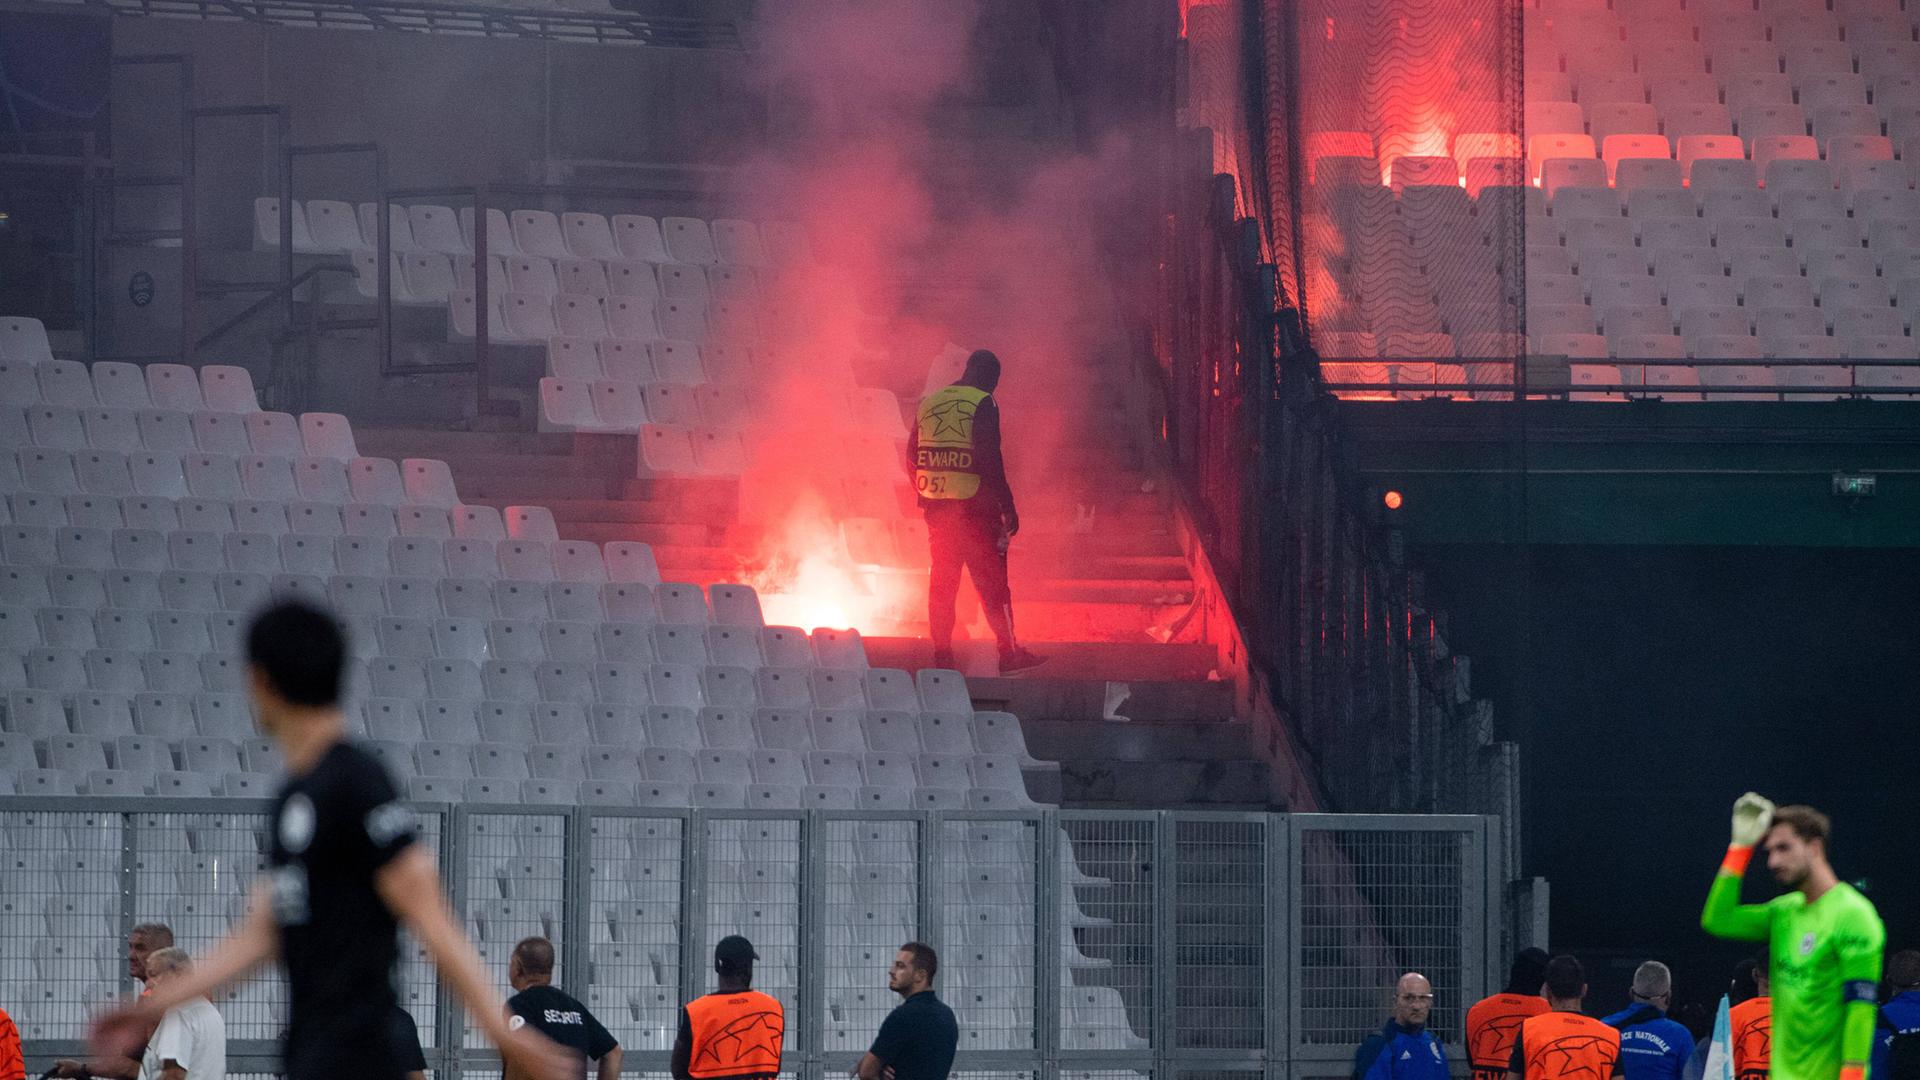 Nach Leuchtraketen-Angriff bei Eintracht-Spiel Marseille-Fan wegen versuchten Mordes angeklagt hessenschau.de Eintracht Frankfurt